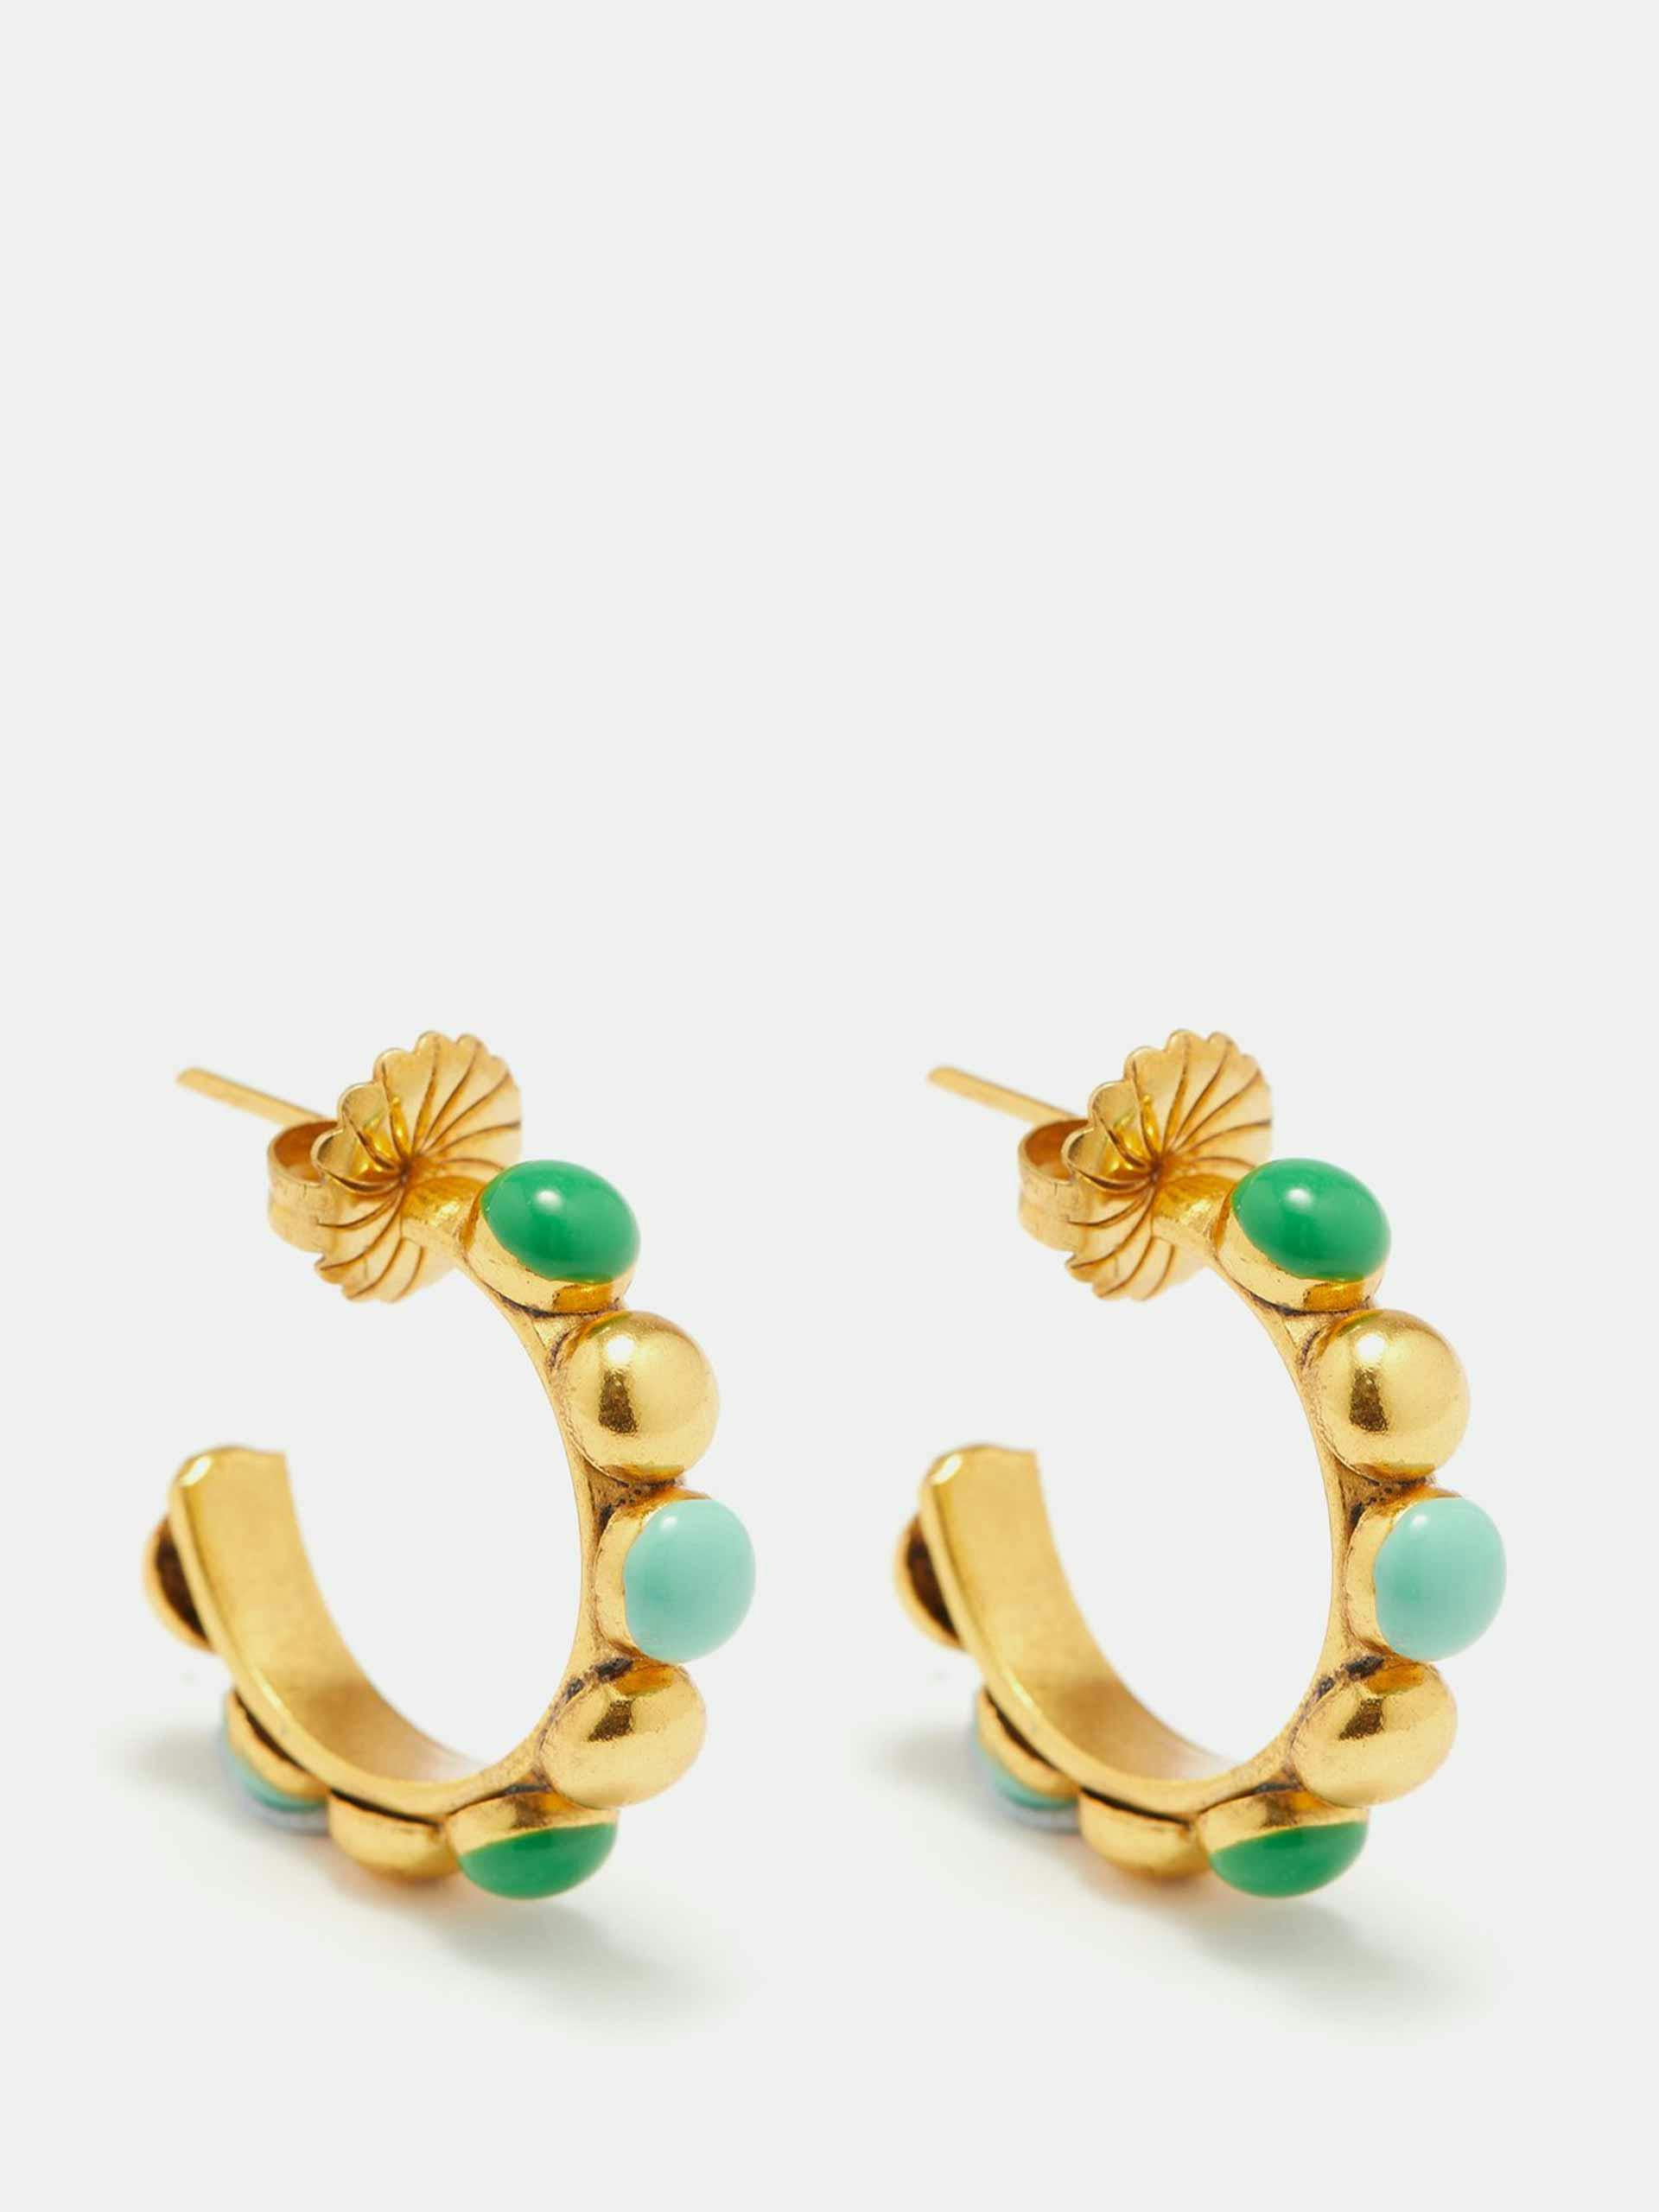 Enamelled gold-plated hoop earrings